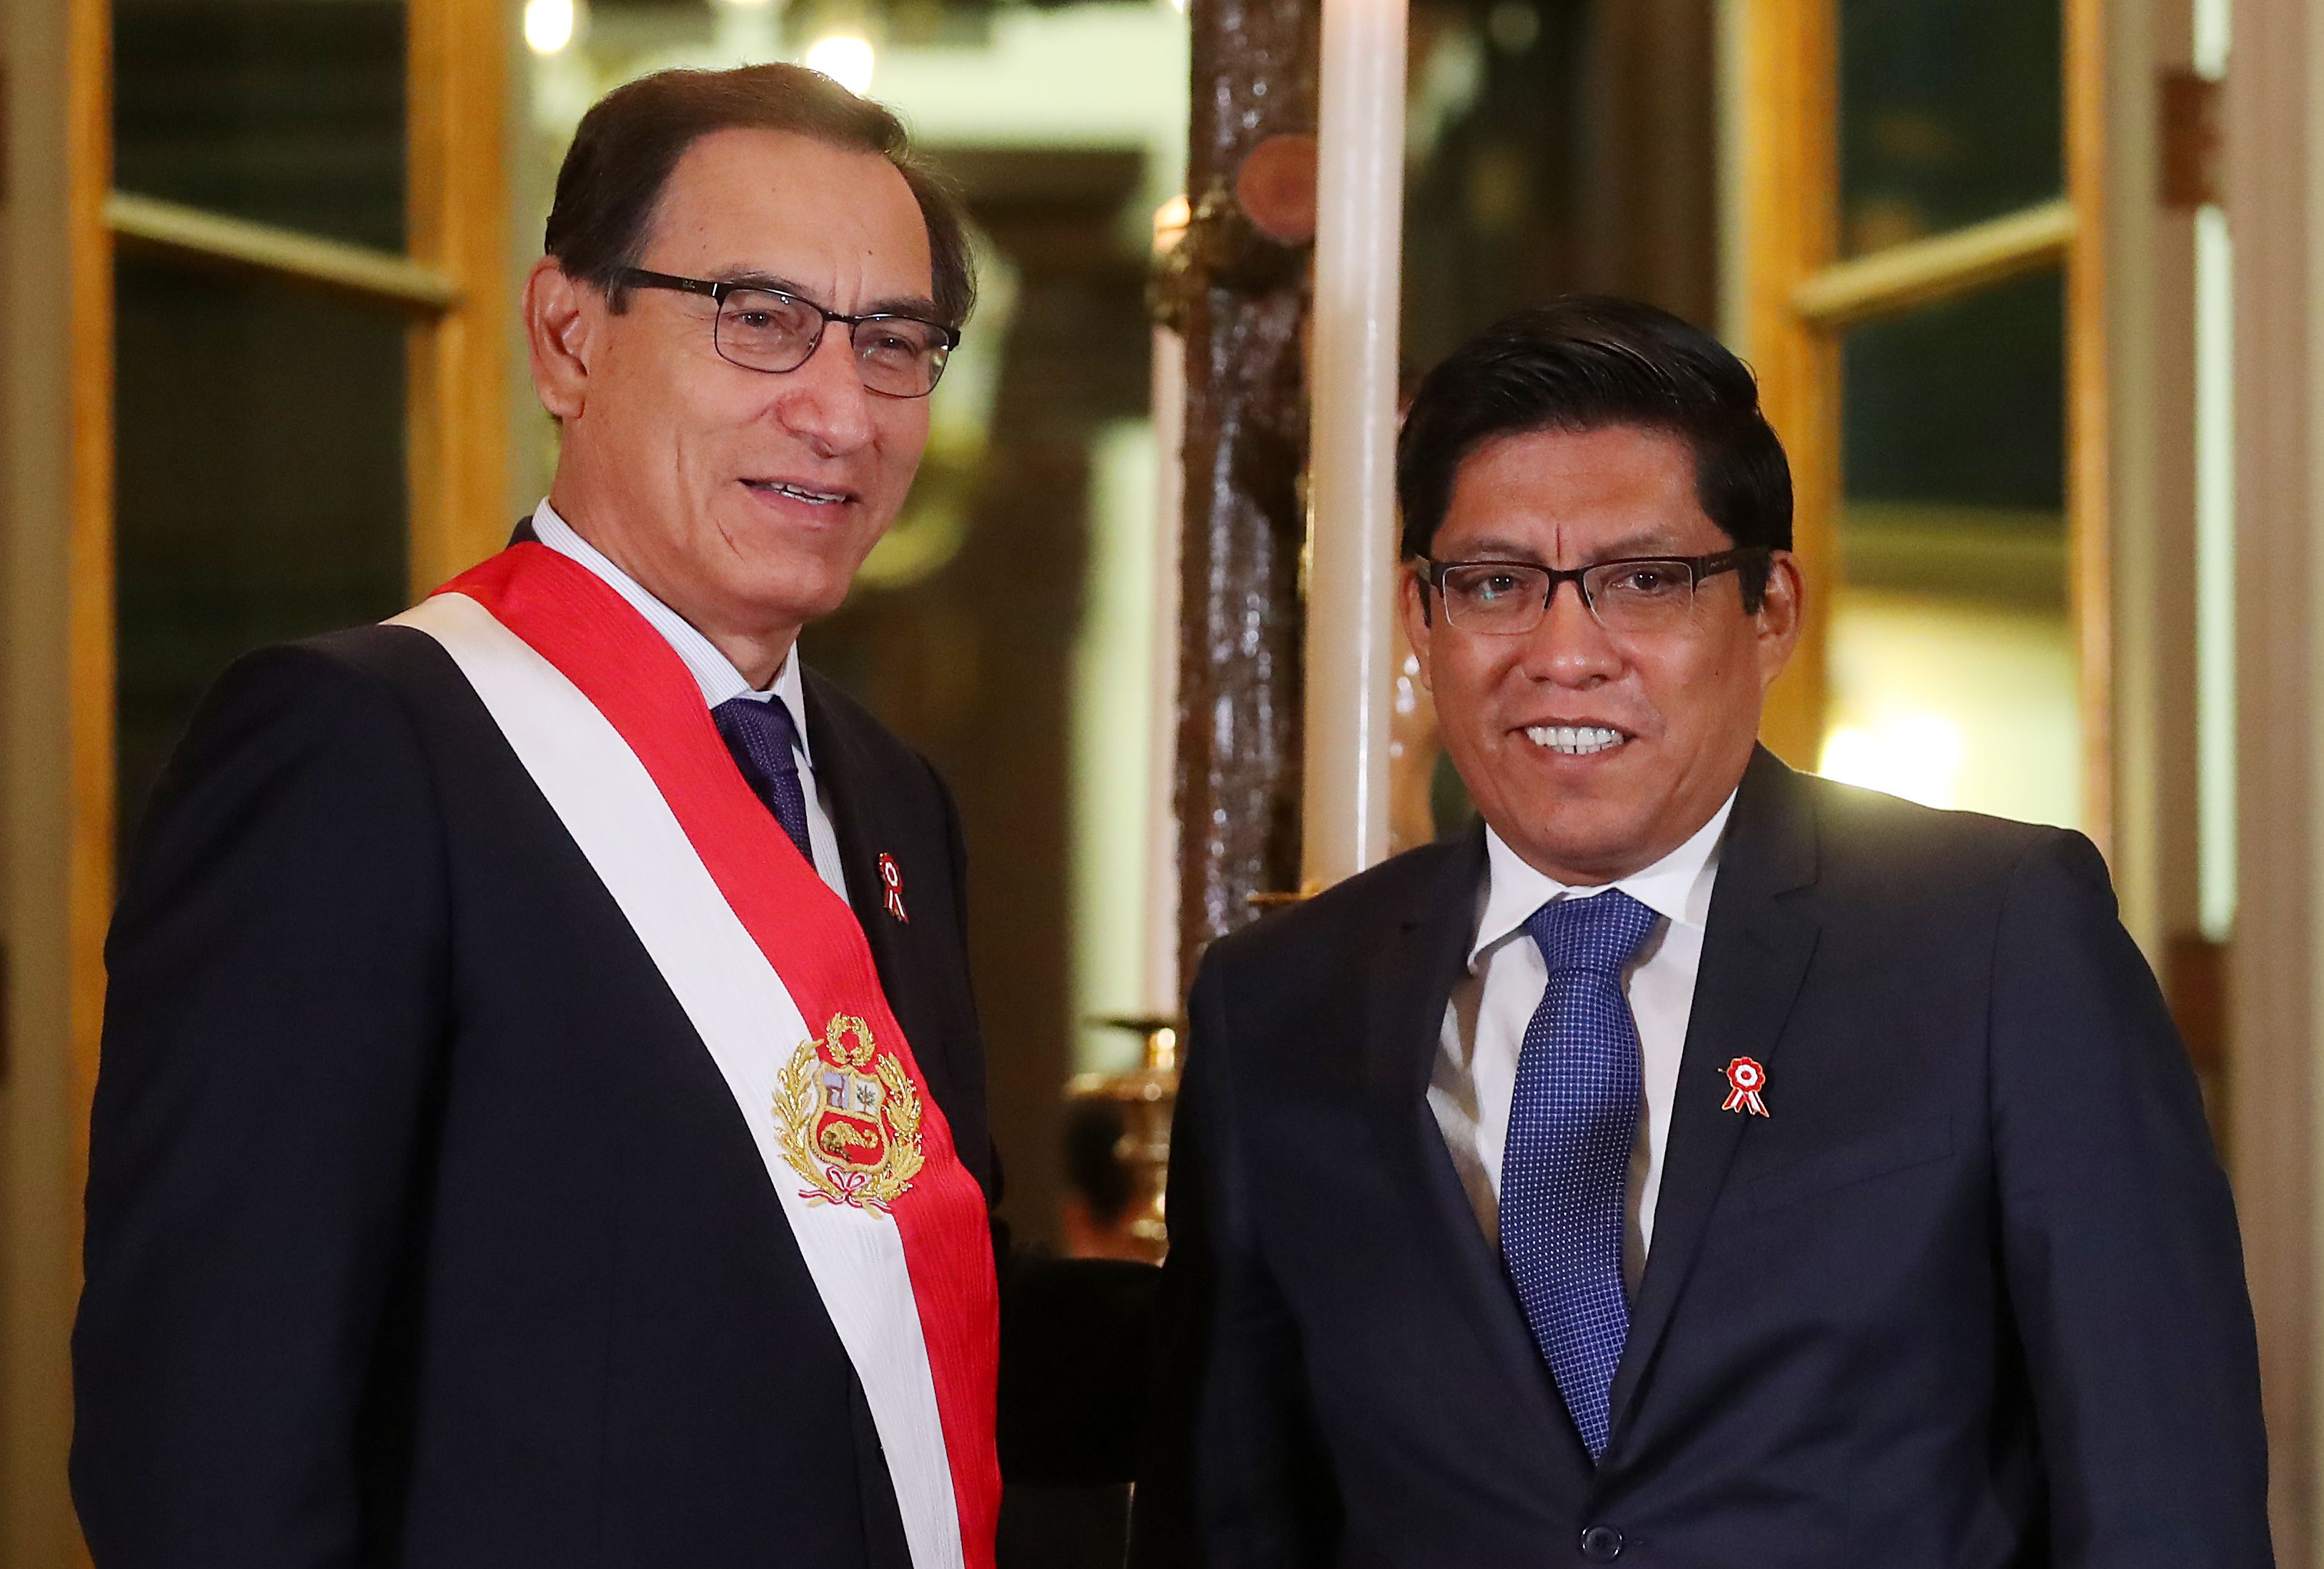 وزير العدل الجديد فيسينتي زايبلوس  والرئيس في بيرو